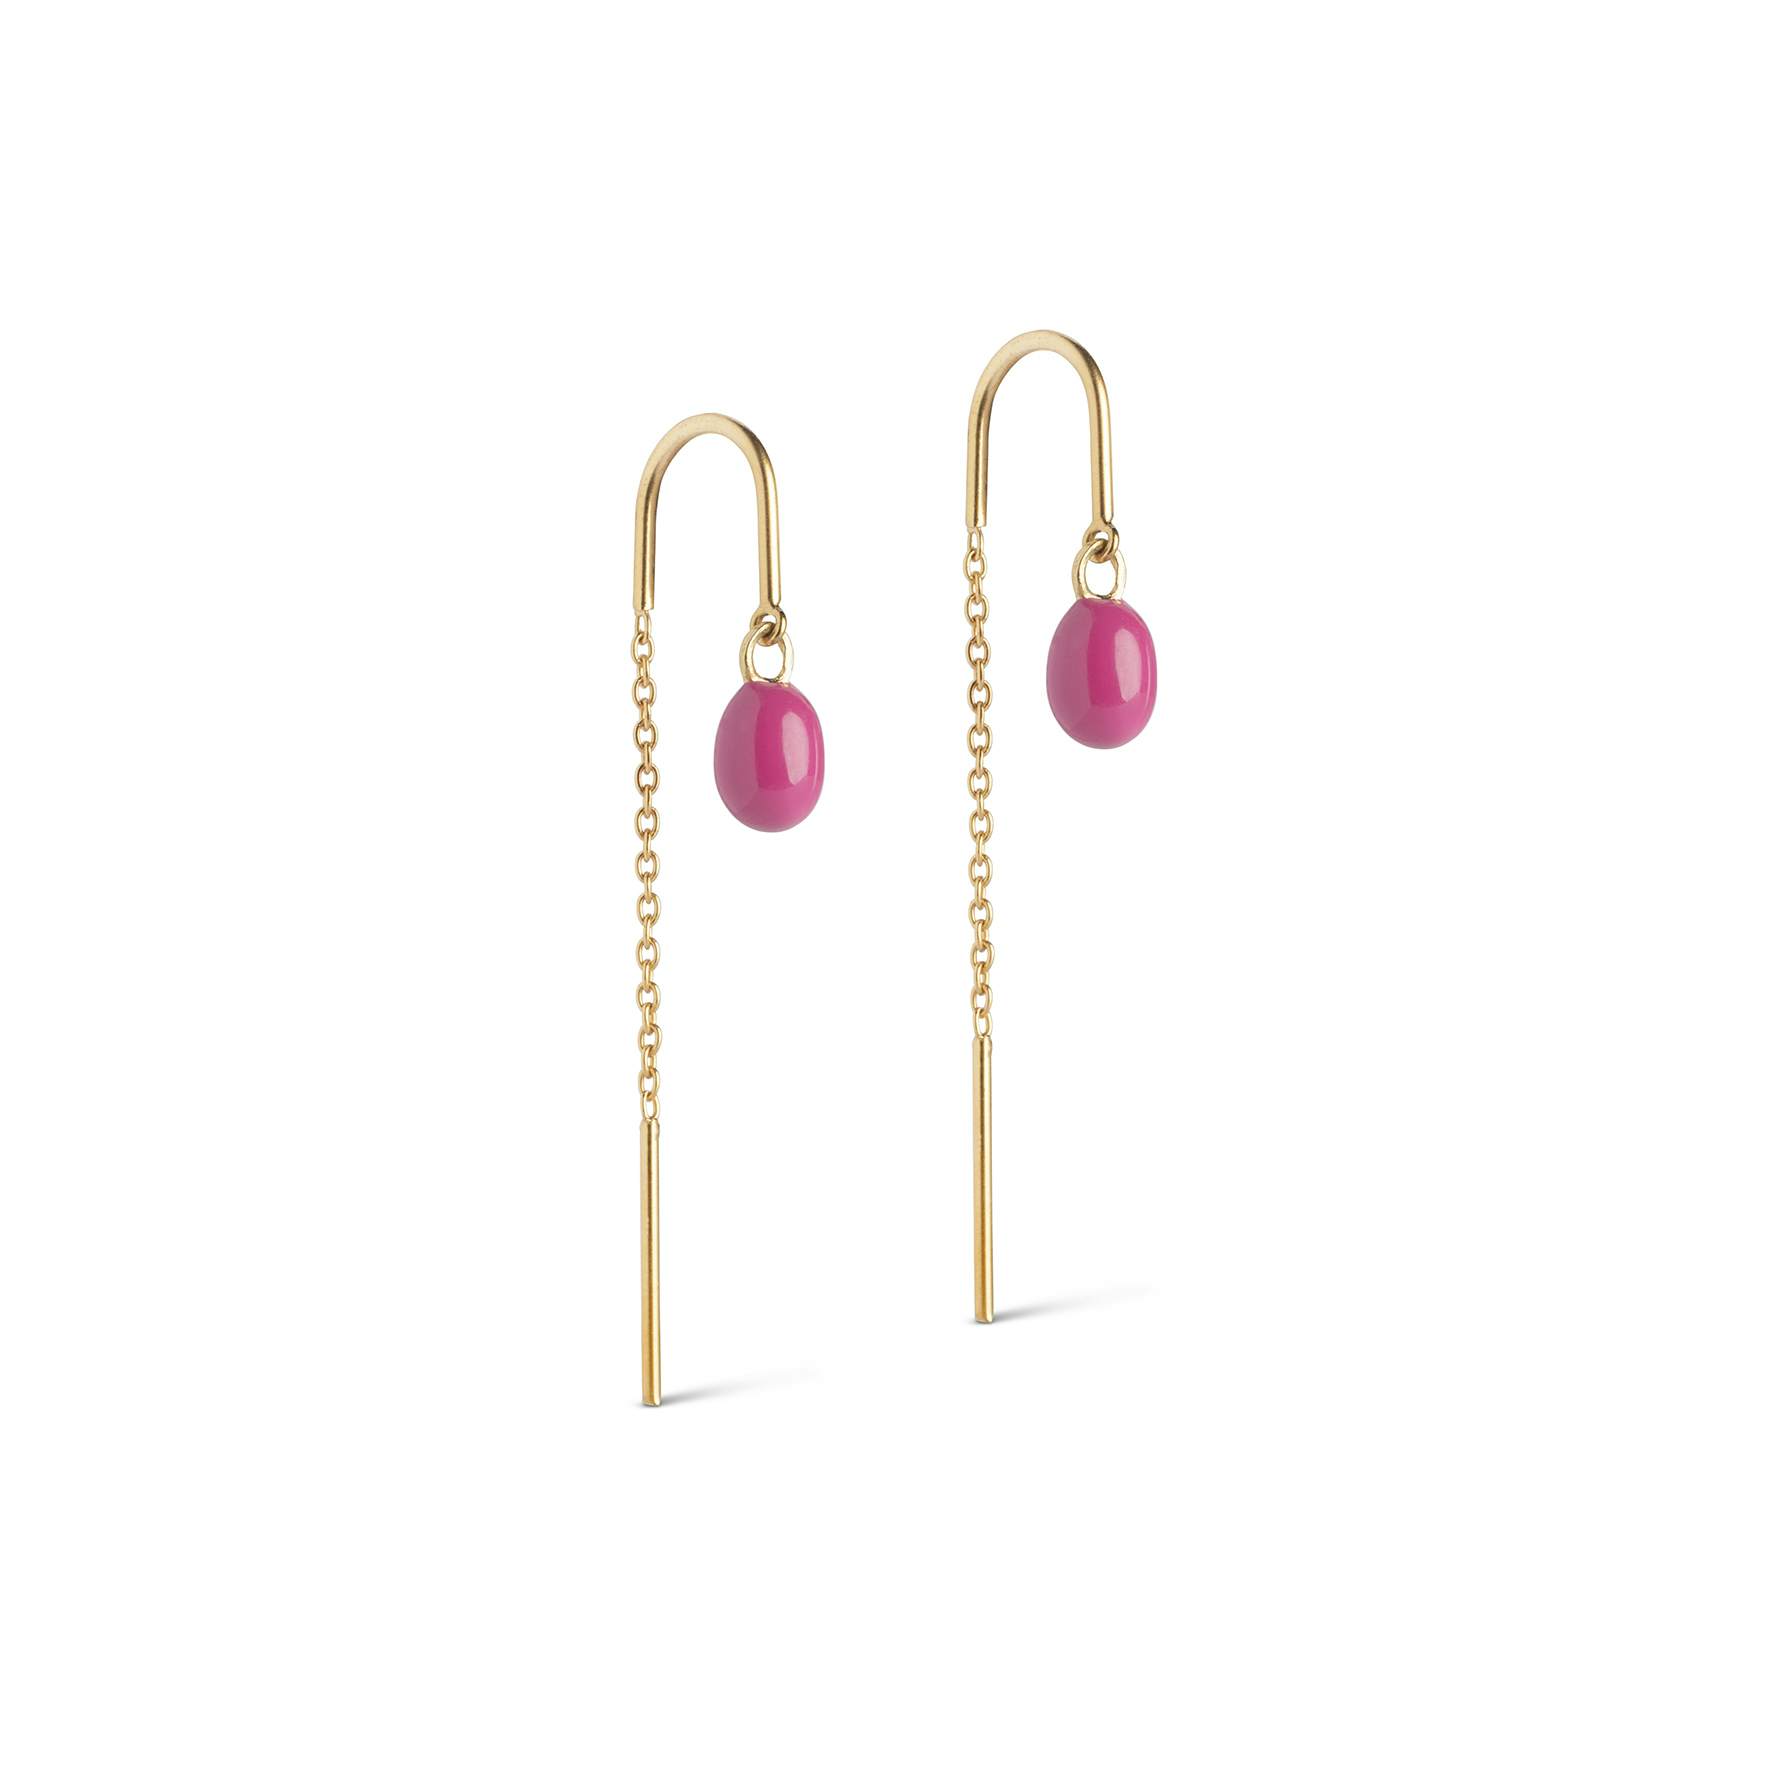 Eleanor Earrings Fuchsia Pink from Enamel Copenhagen in Goldplated-Silver Sterling 925